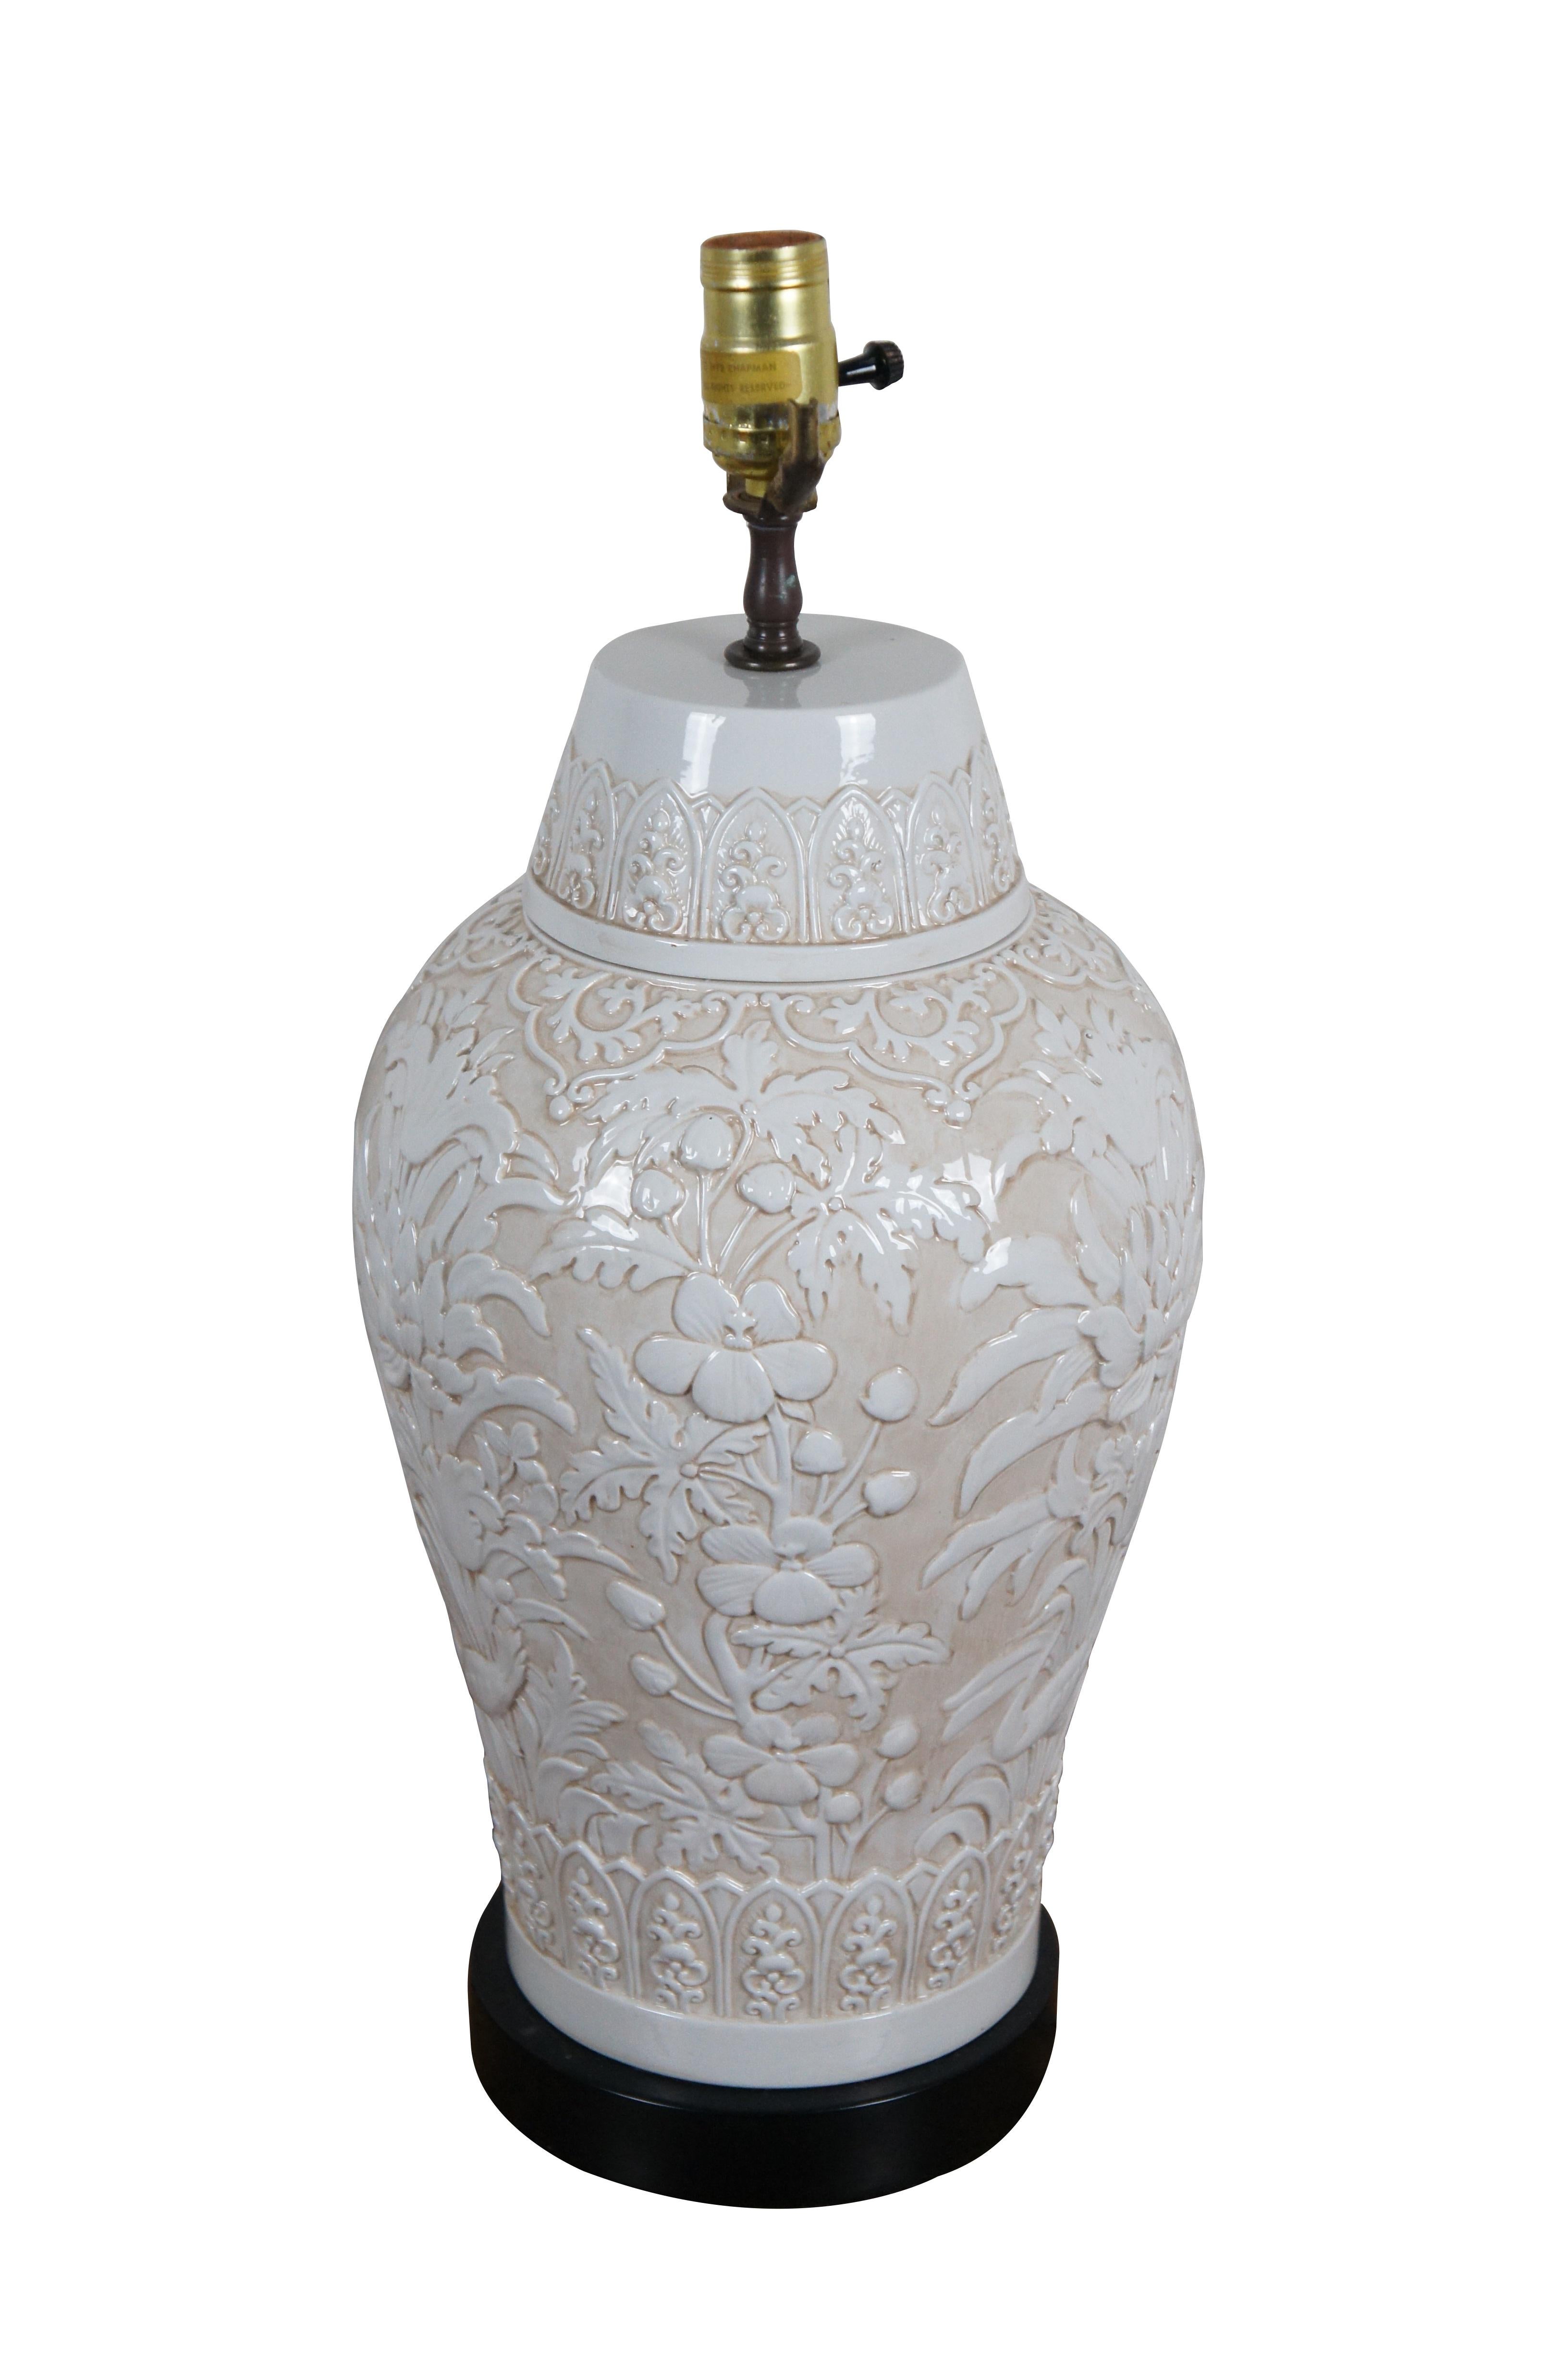 Lampe de table Chapman vintage 1972, fabriquée en porcelaine avec un design chinoiserie de fleurs / chrysanthèmes et oiseaux en relief blanc sur un fond beige, montée sur une simple base noire. Pas de harpe ni d'ombre.

Dimensions :
9,75